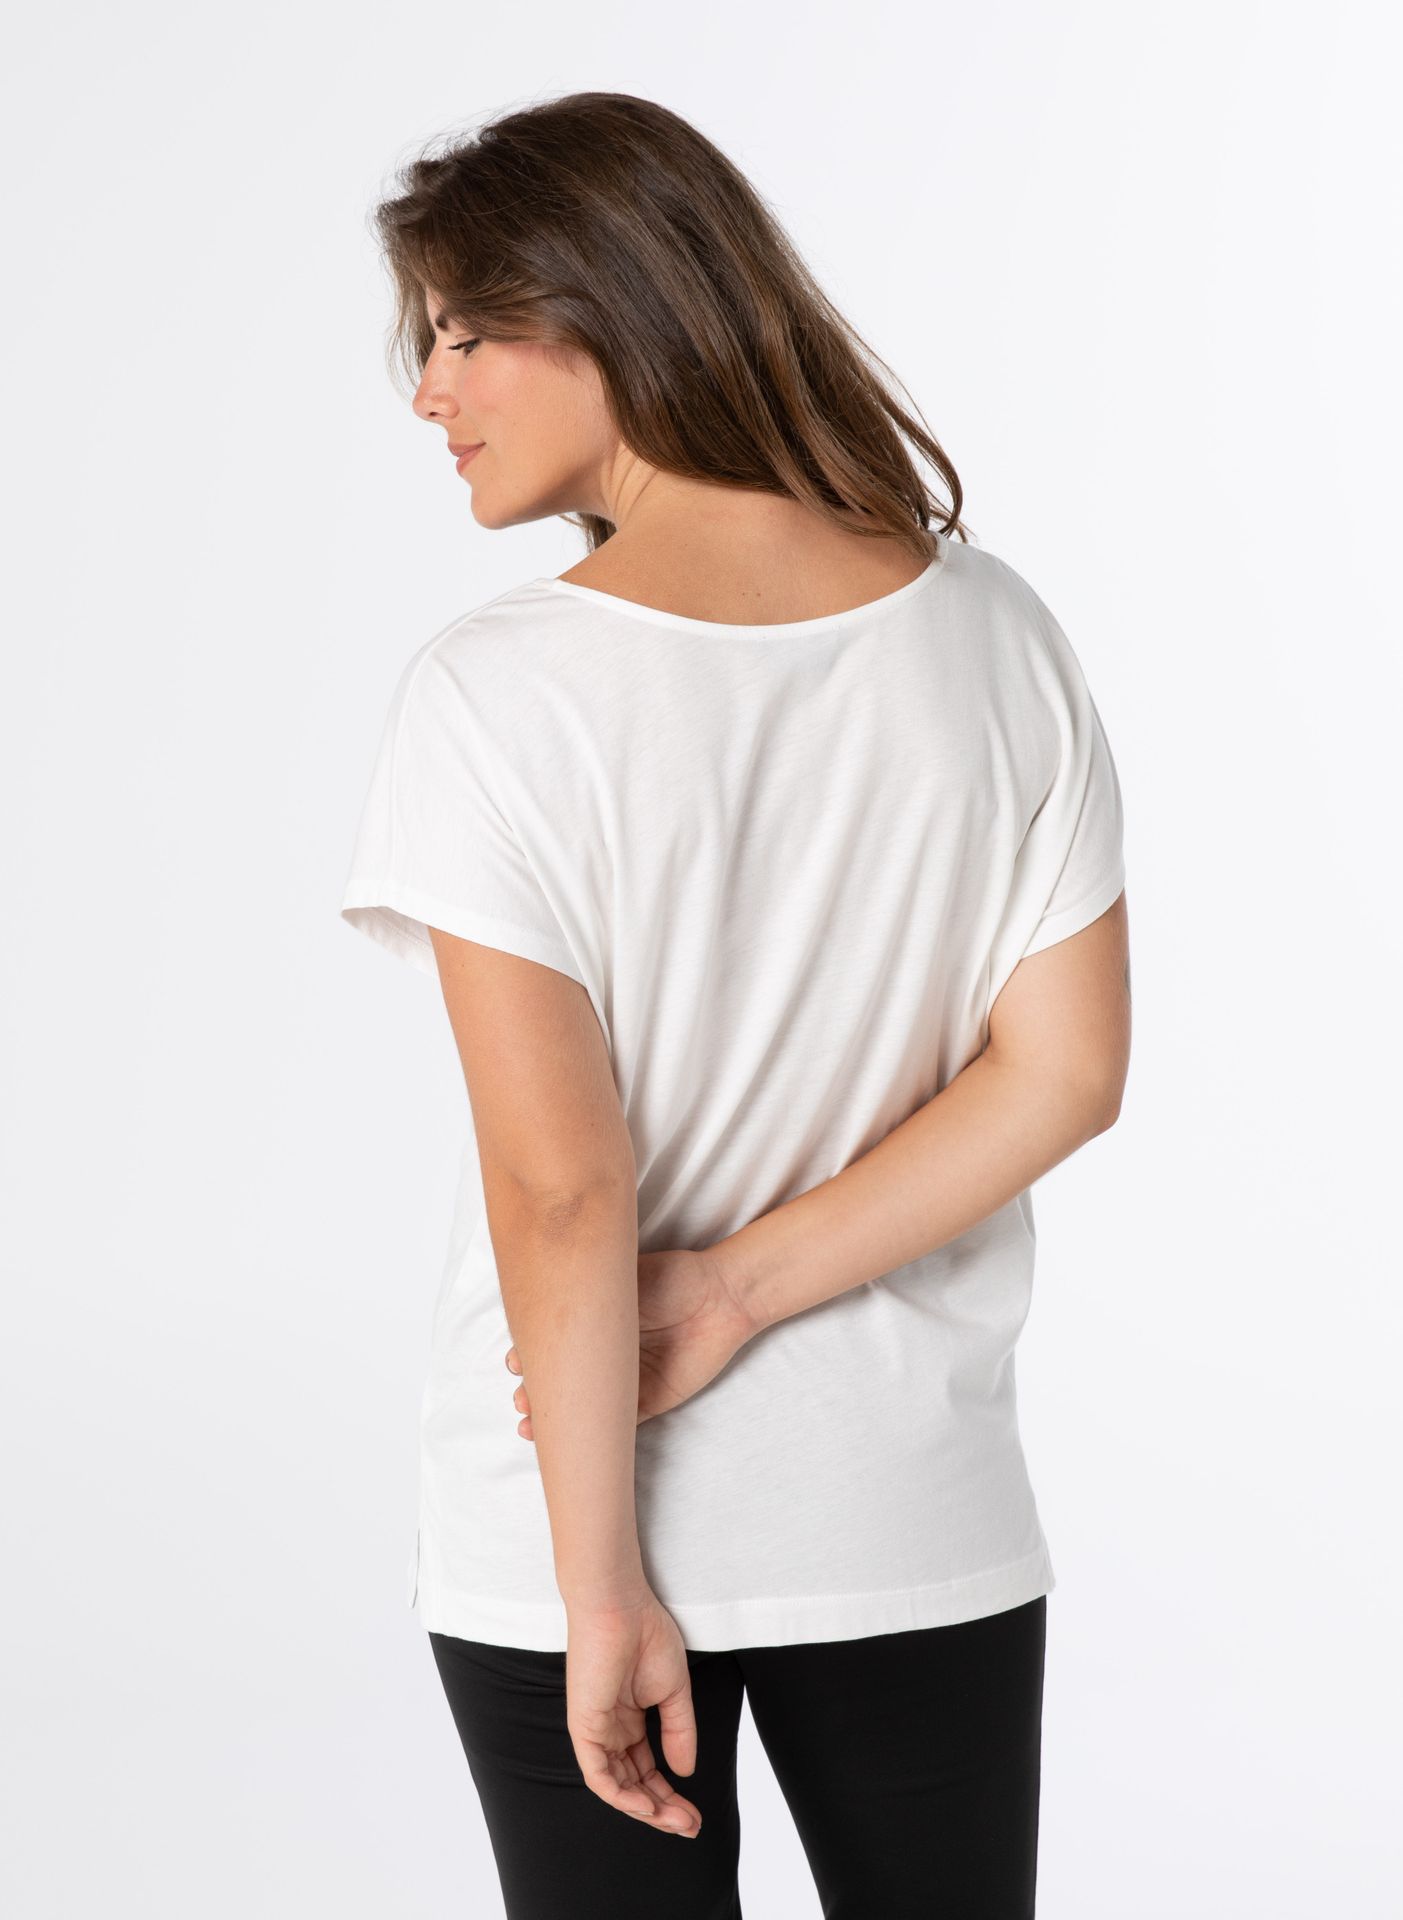 Norah Shirt - Activewear white 211735-100